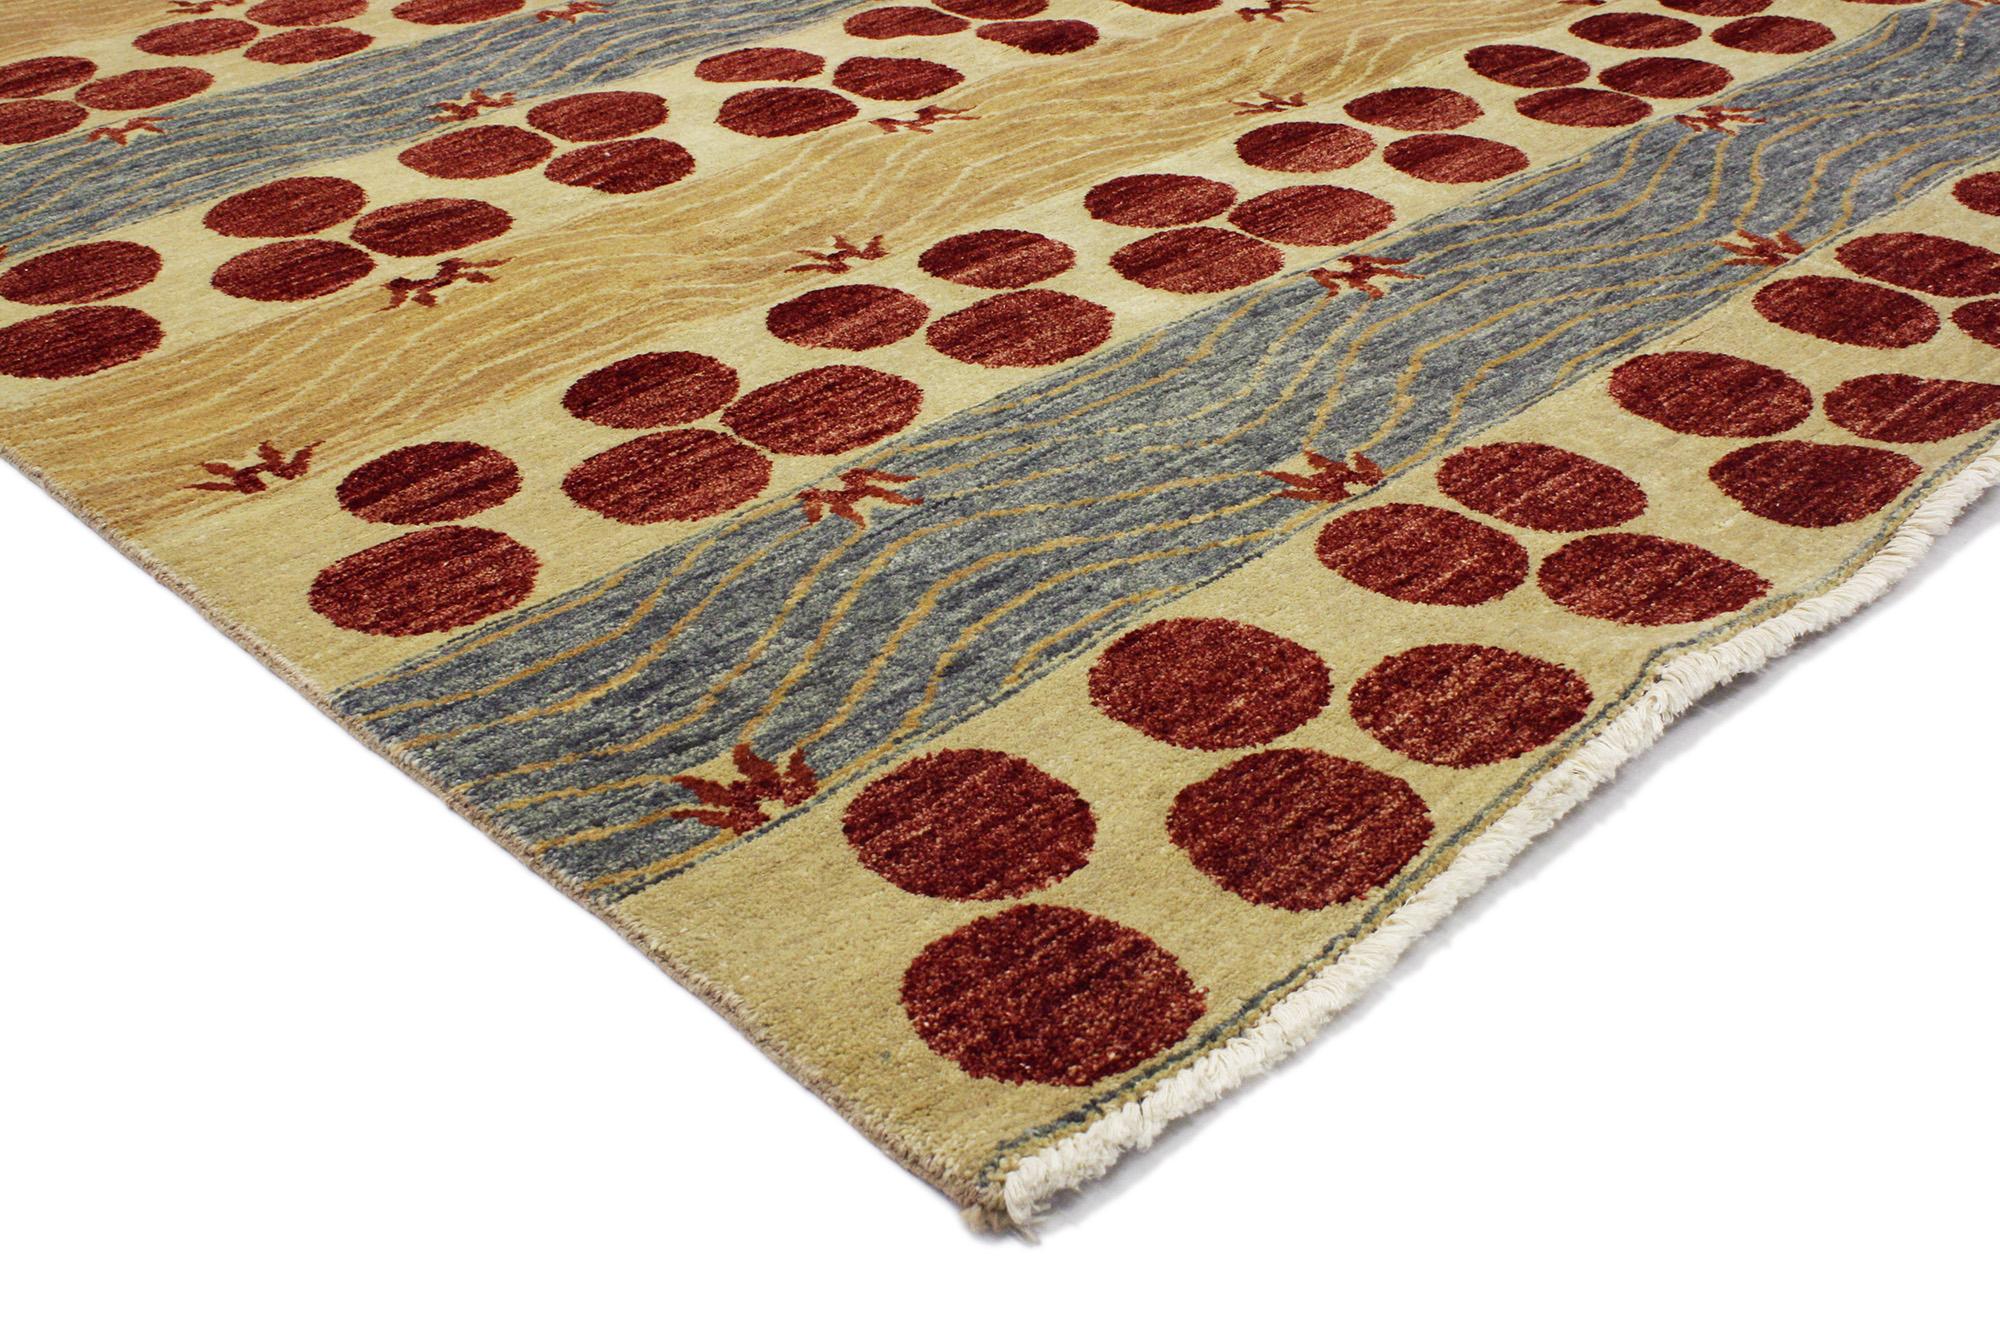 30289 Tapis de zone indien transitionnel, 05'09 X 09'03. Ce tapis indien contemporain en laine nouée à la main présente un motif Chintamani dynamique à grande échelle dans de somptueuses couleurs chaudes. Le motif classique du Chintamani, qui